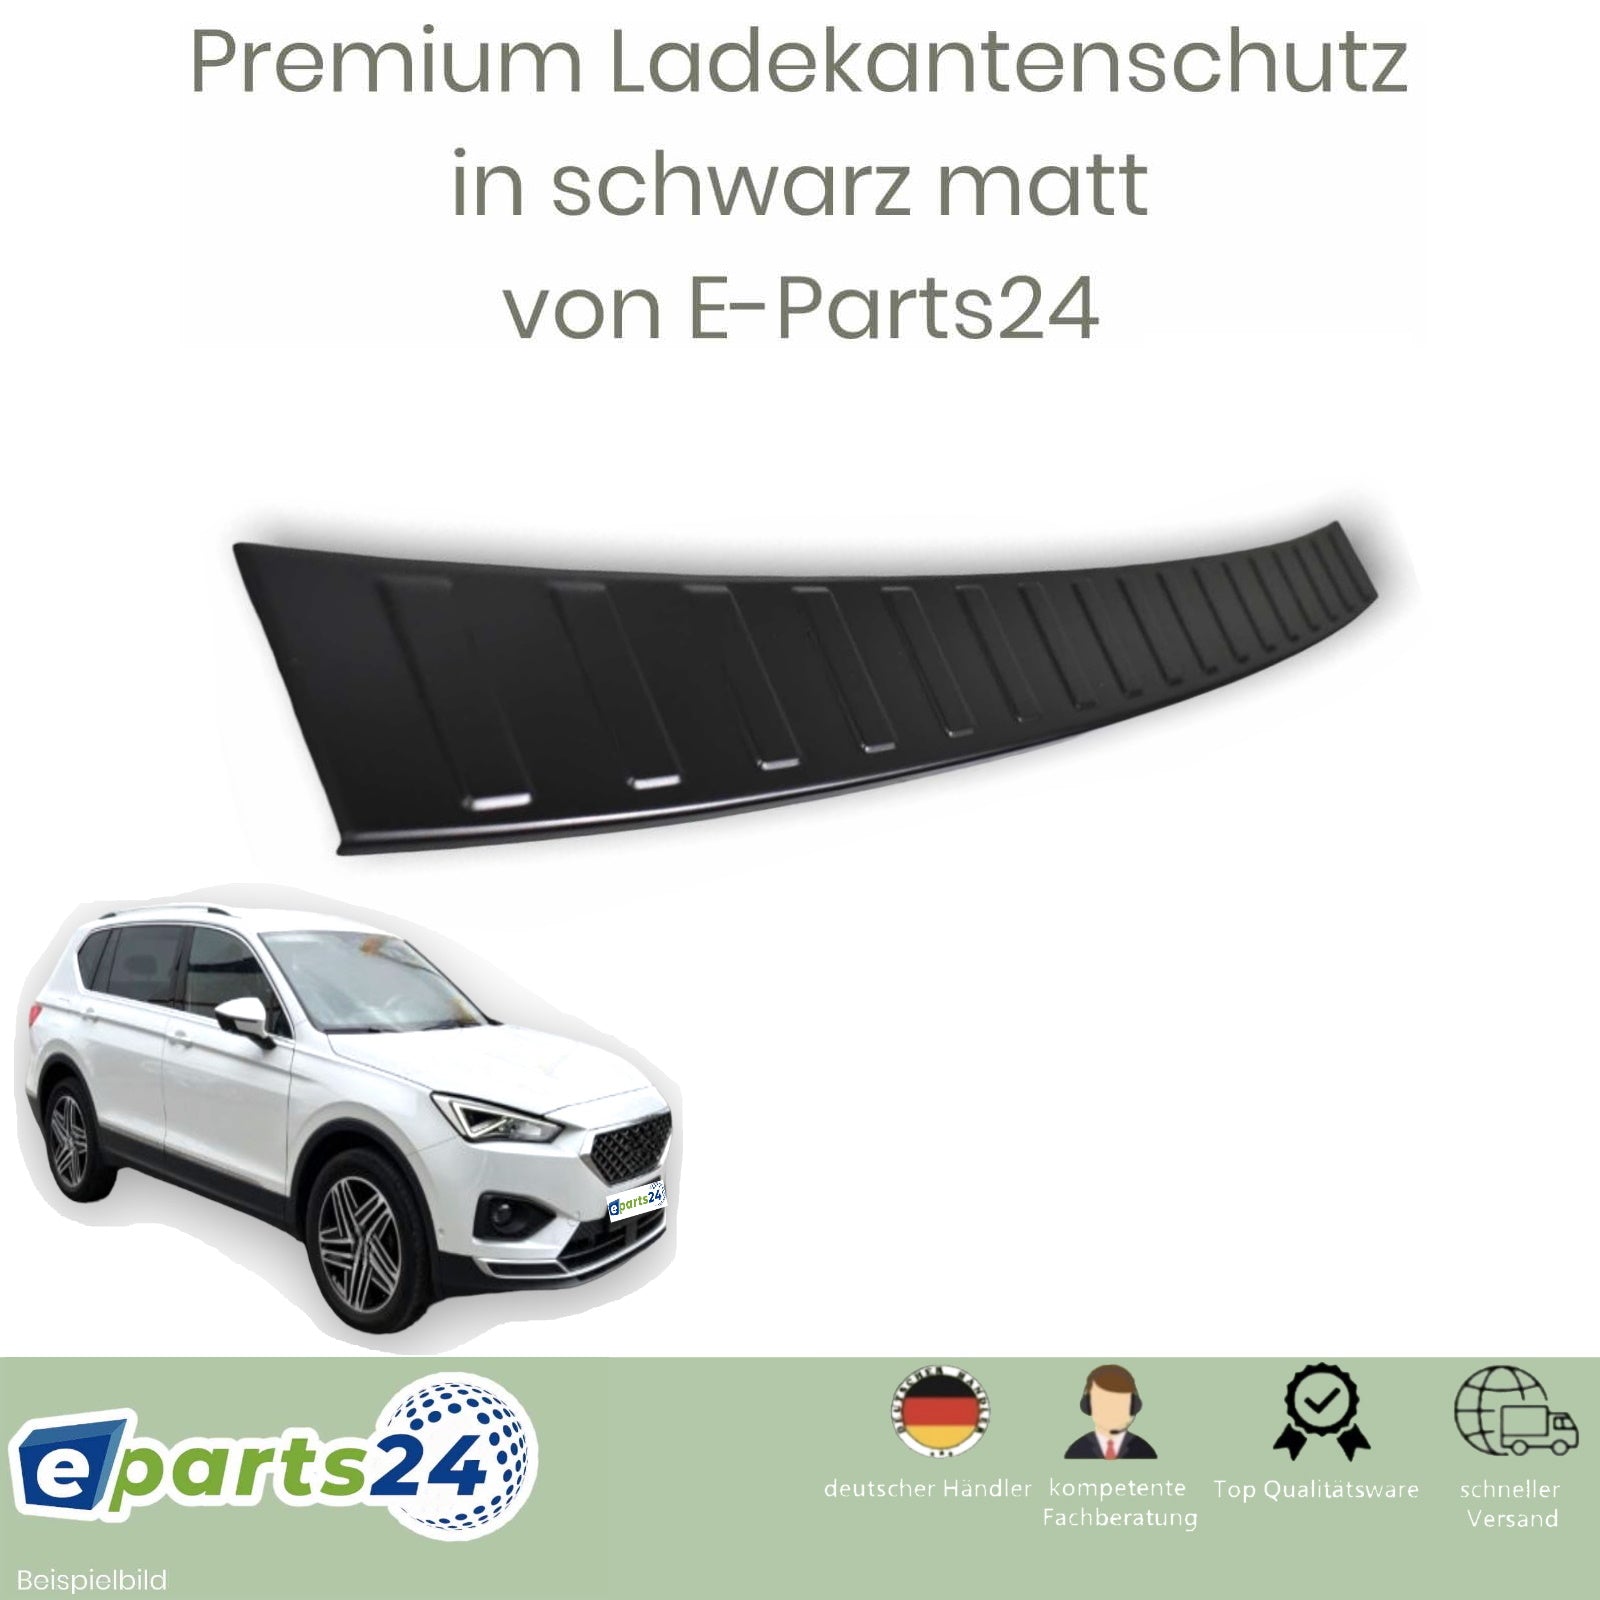 Heckschutz pul für E-Parts24 matt Ladekantenschutz Tarraco ab 2018- schwarz – Seat